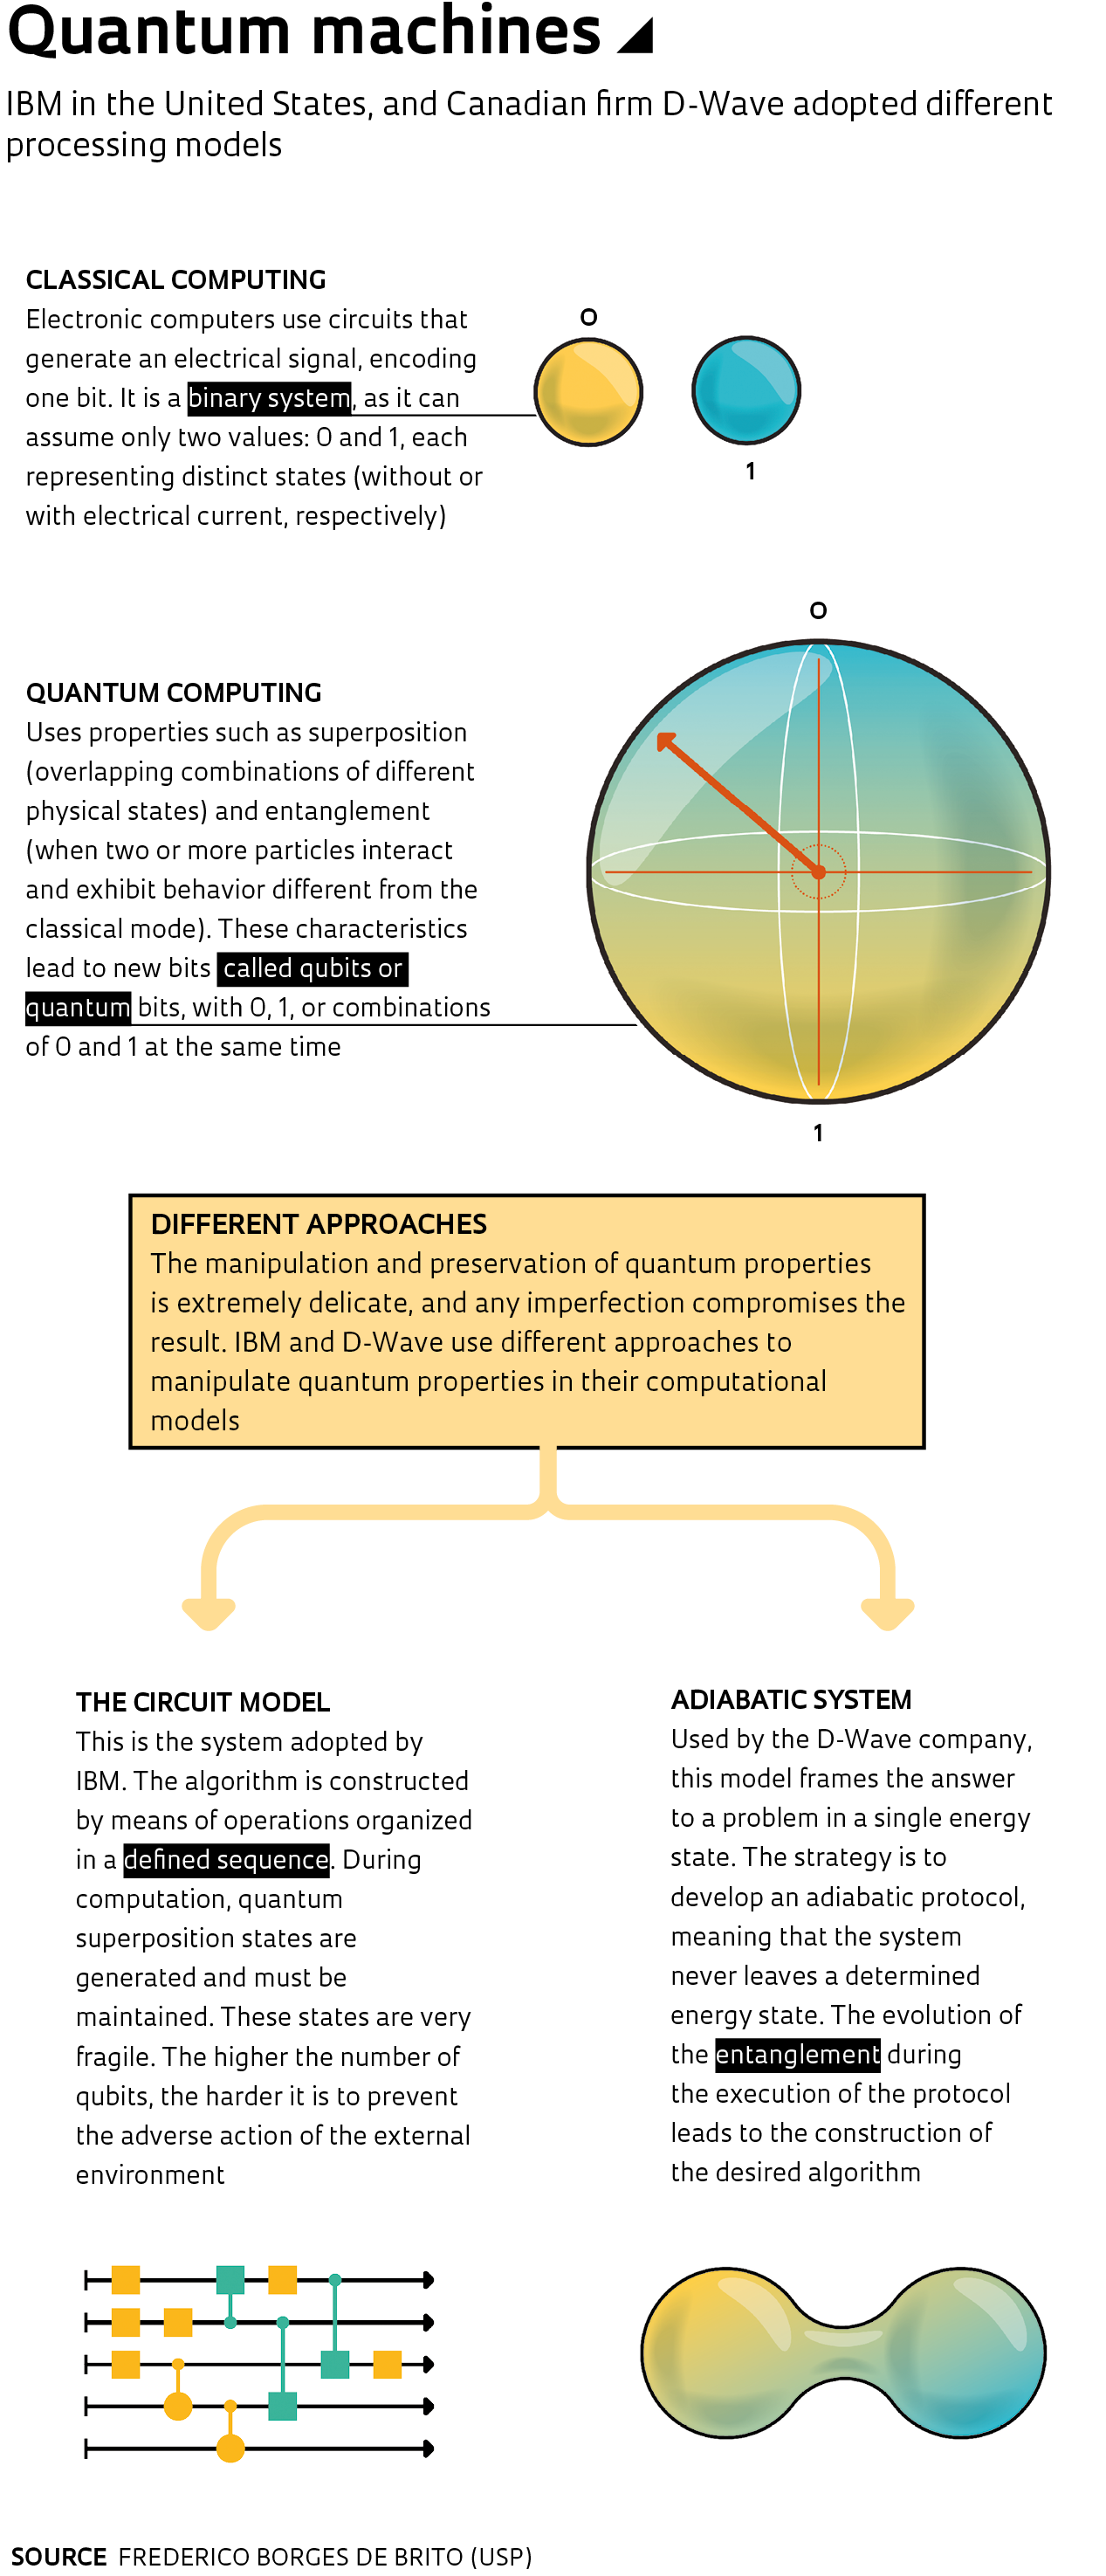 What is a qubit (for quantum bit)?